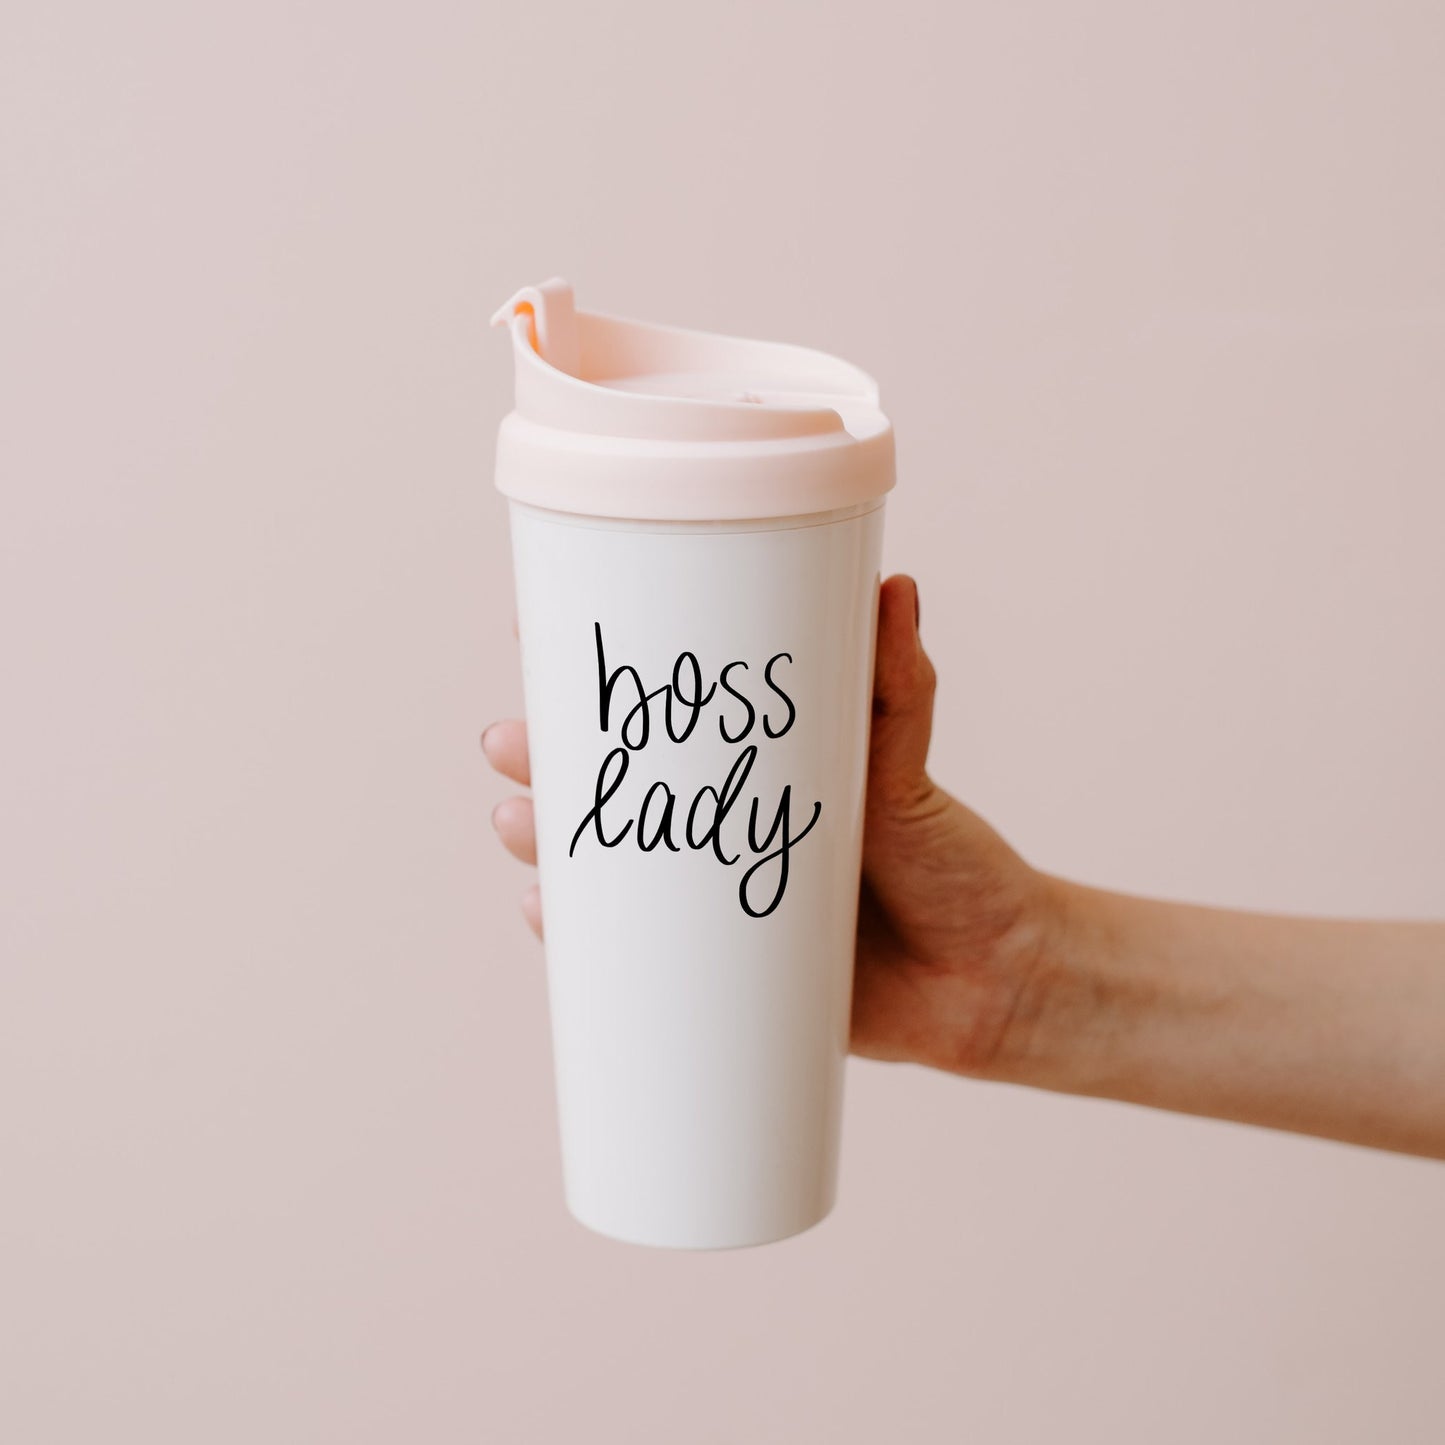 Boss Lady Travel Mug